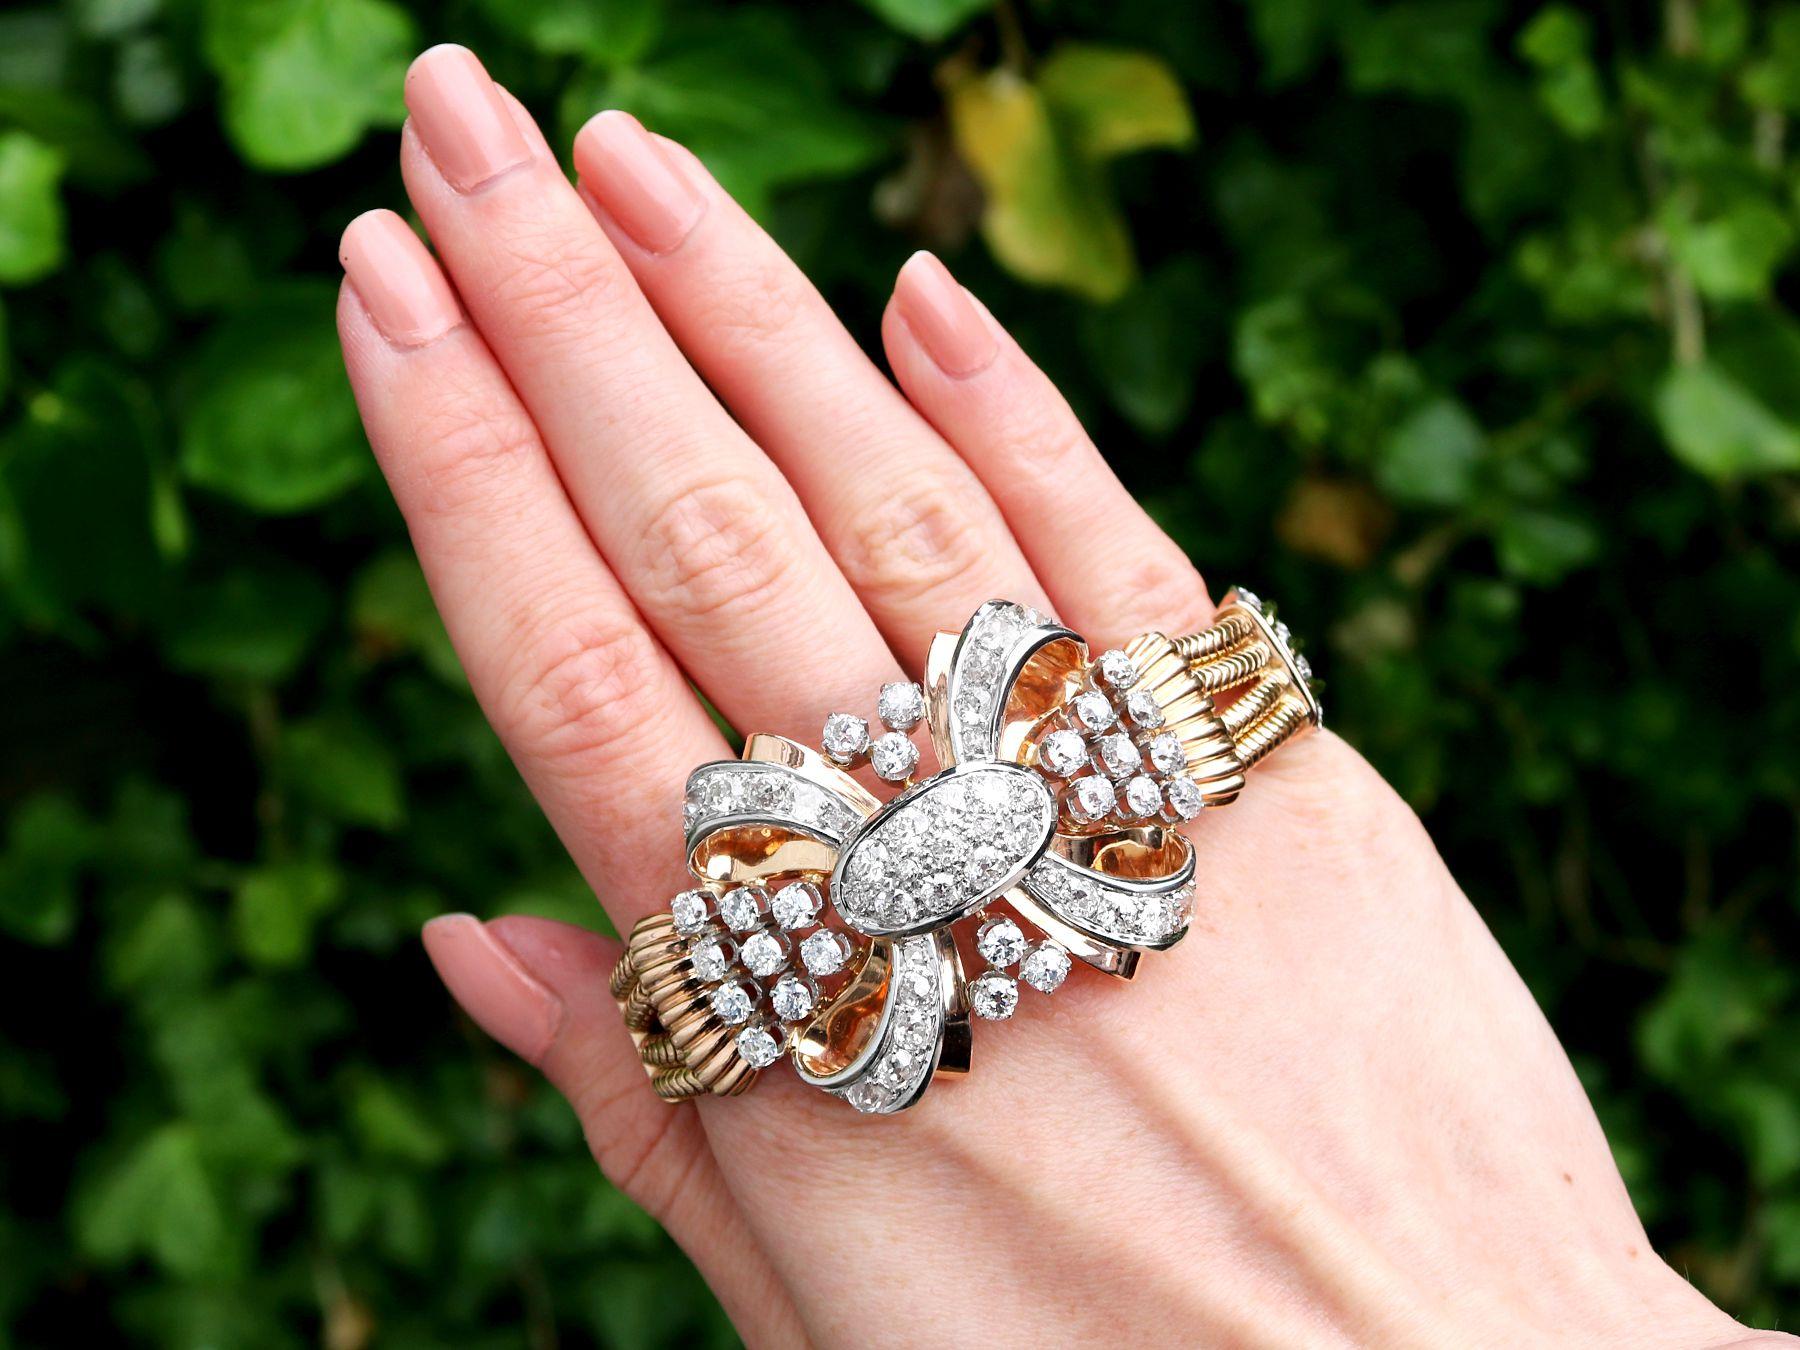 Magnifique, fin et impressionnant bracelet français vintage en diamant de 8,77 carats, or jaune 18 carats et platine, faisant partie de nos diverses collections de bijoux vintage et de bijoux de succession.

Ce magnifique, fin et impressionnant